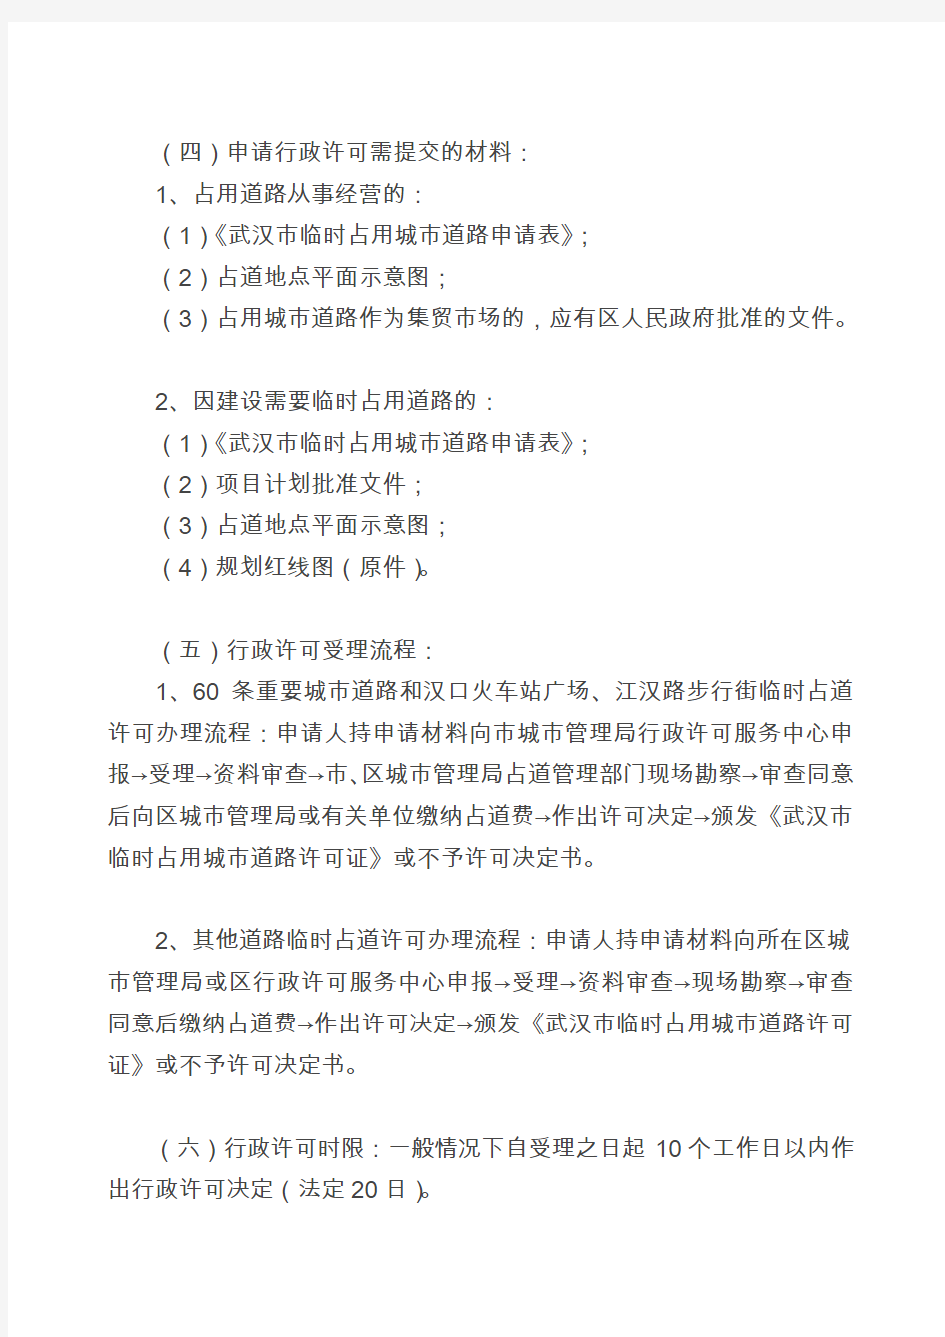 武汉市城市管理行政许可实施办法